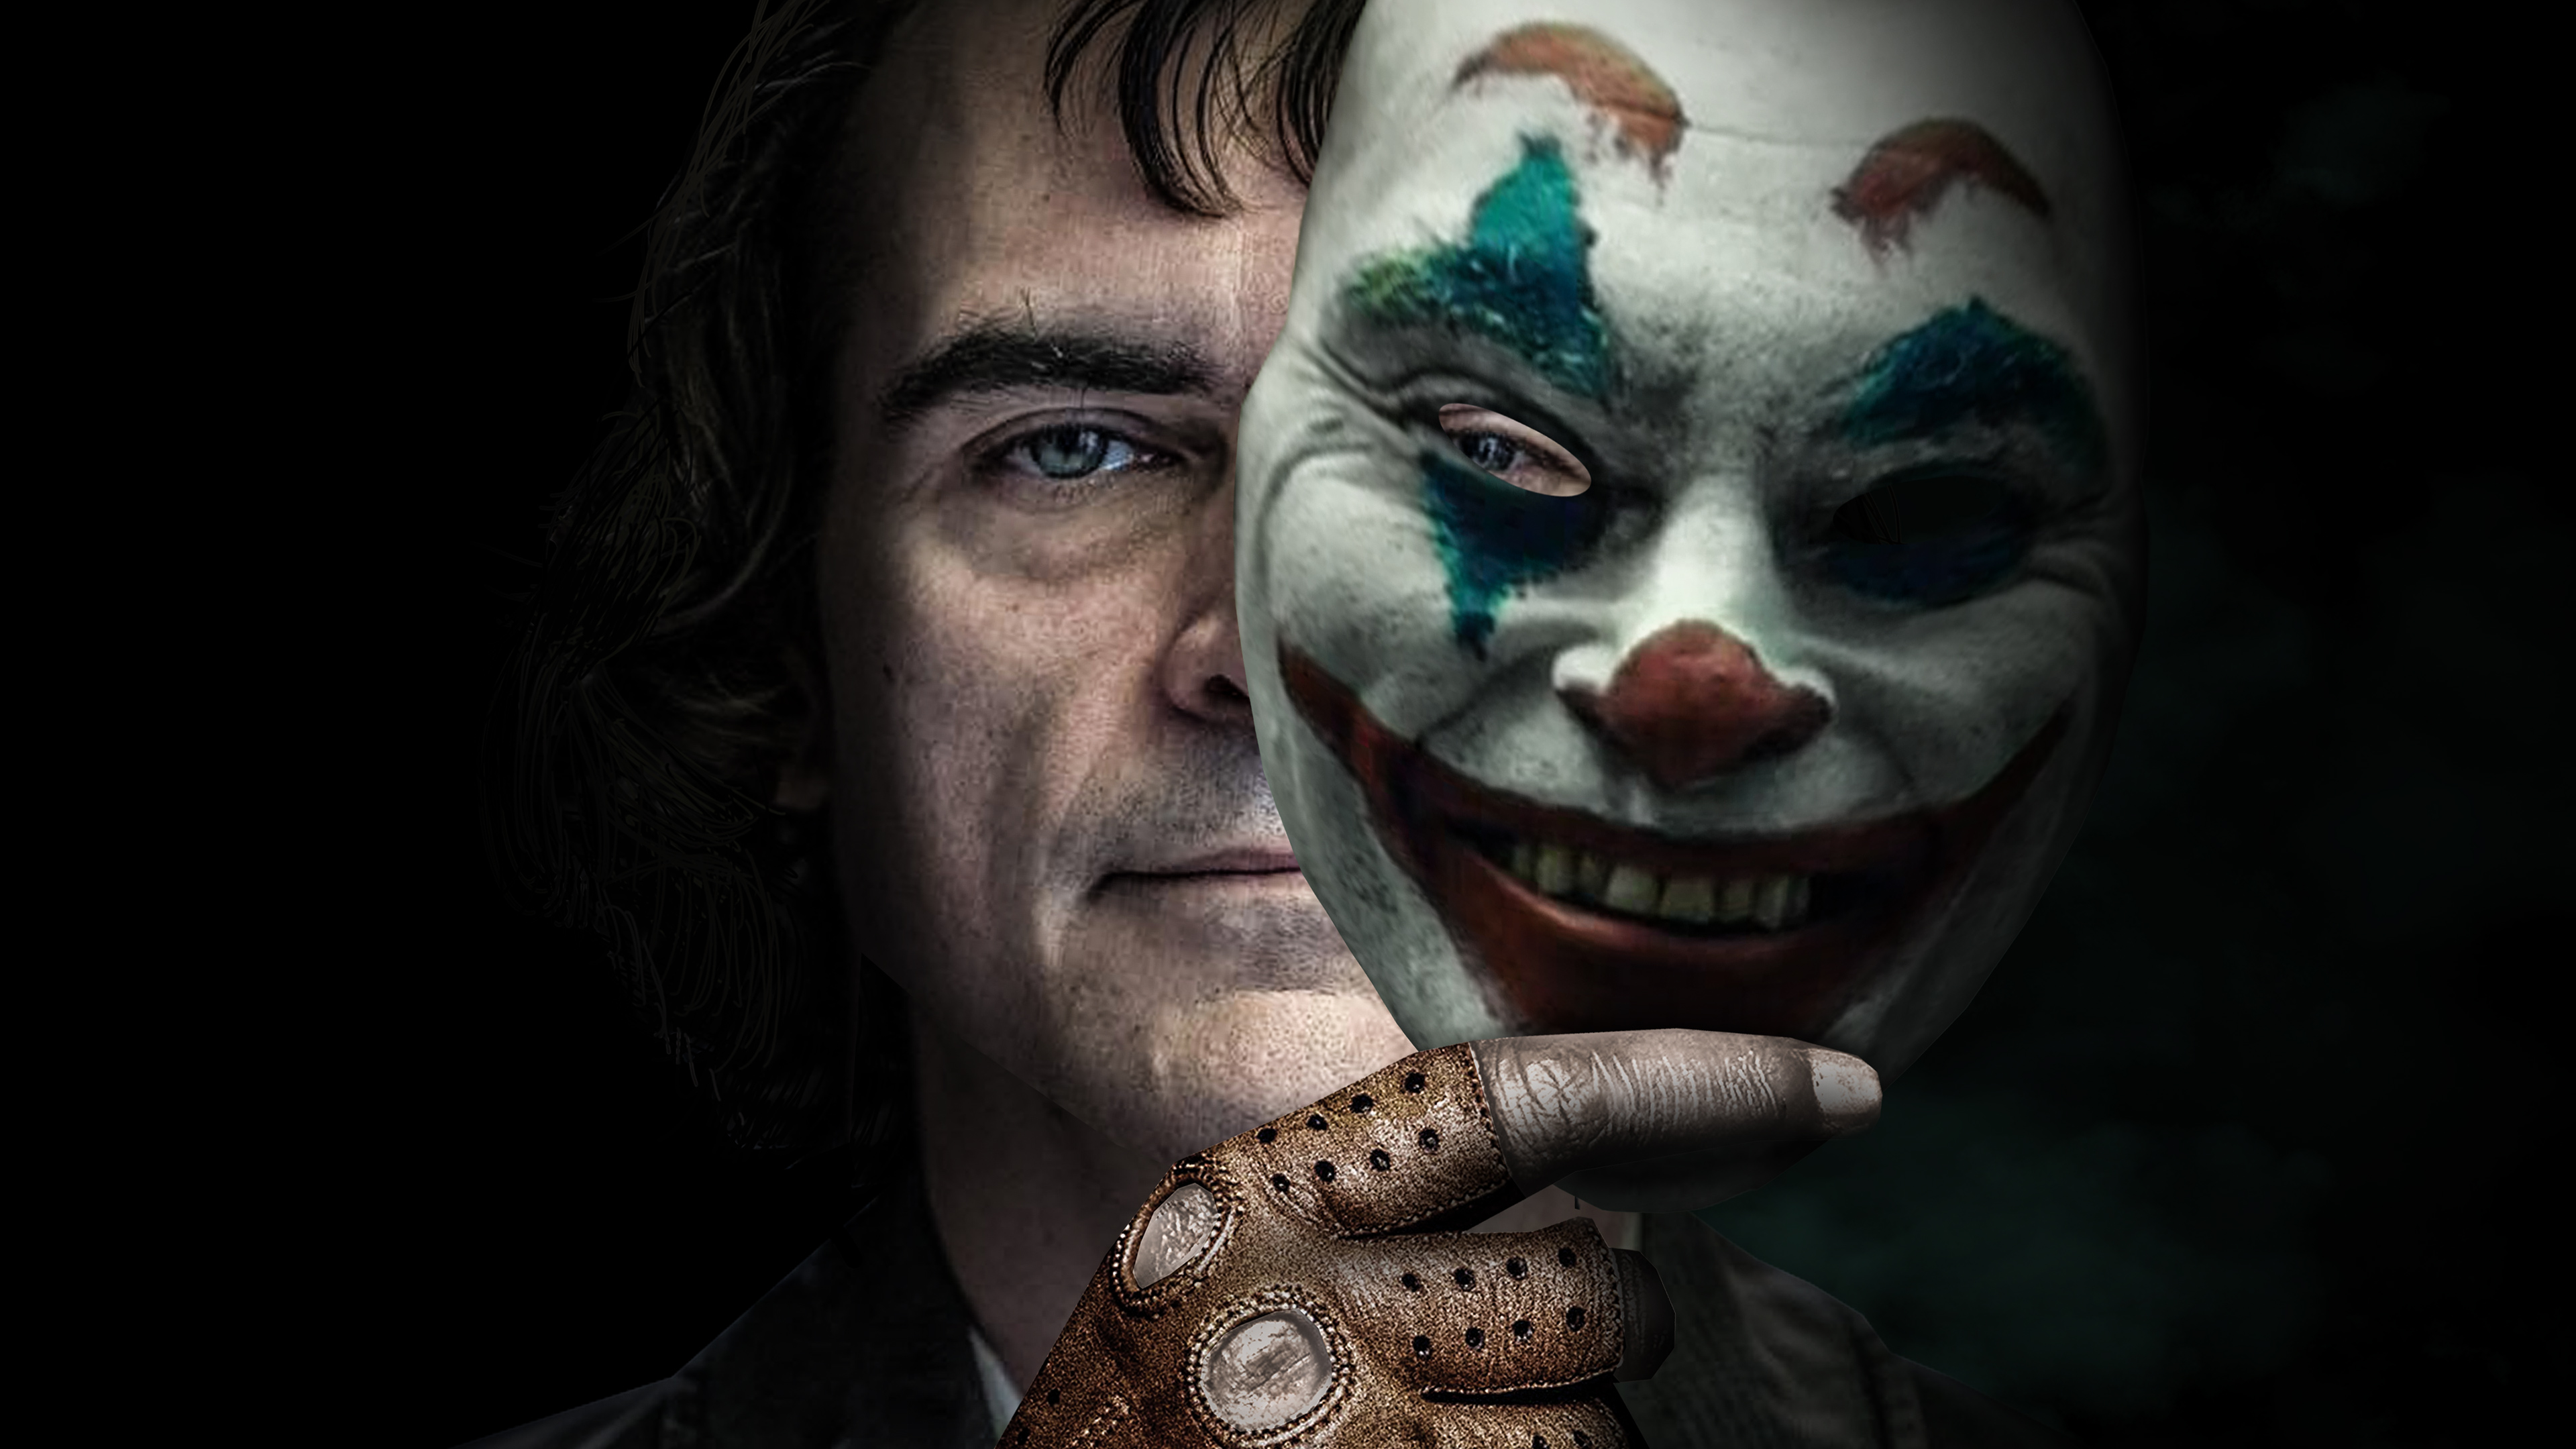 Joker 2019 Movie 4k, HD Movies, 4k Wallpapers, Images ...